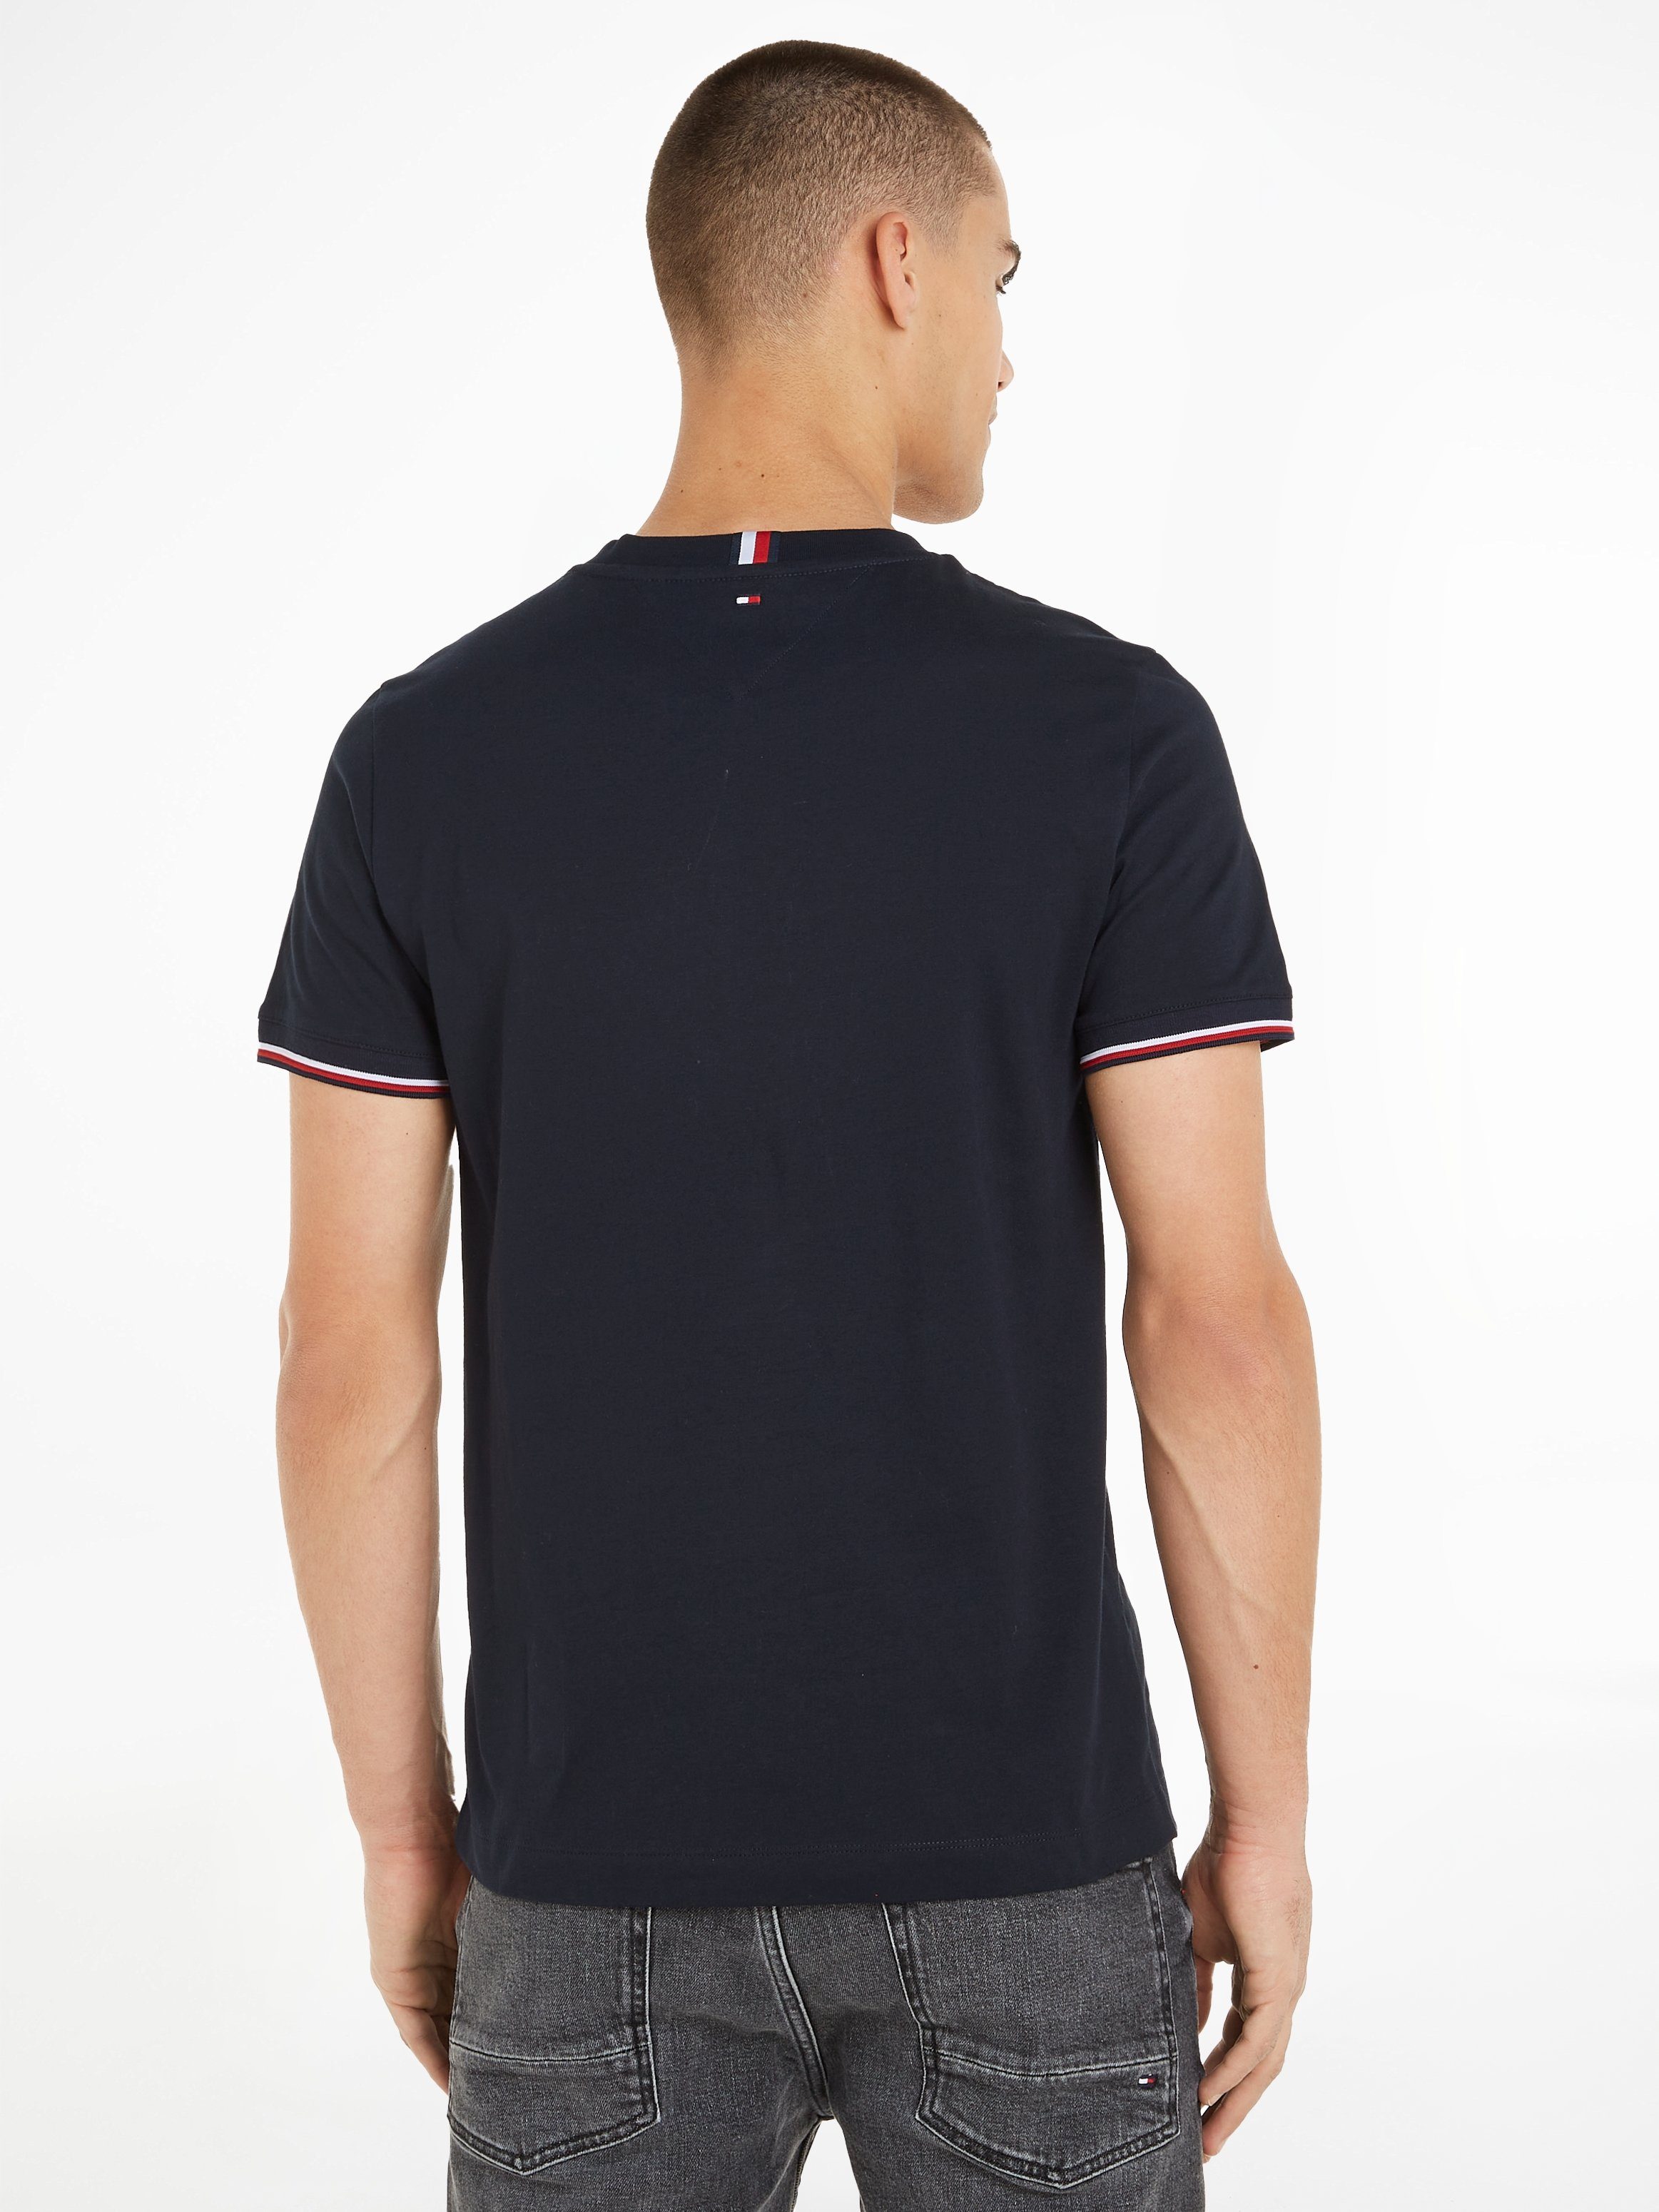 Casa Moda, Polo Pique Fan-Shirt, Mit Zipper + Rücken-Nummer, Farbe weiß